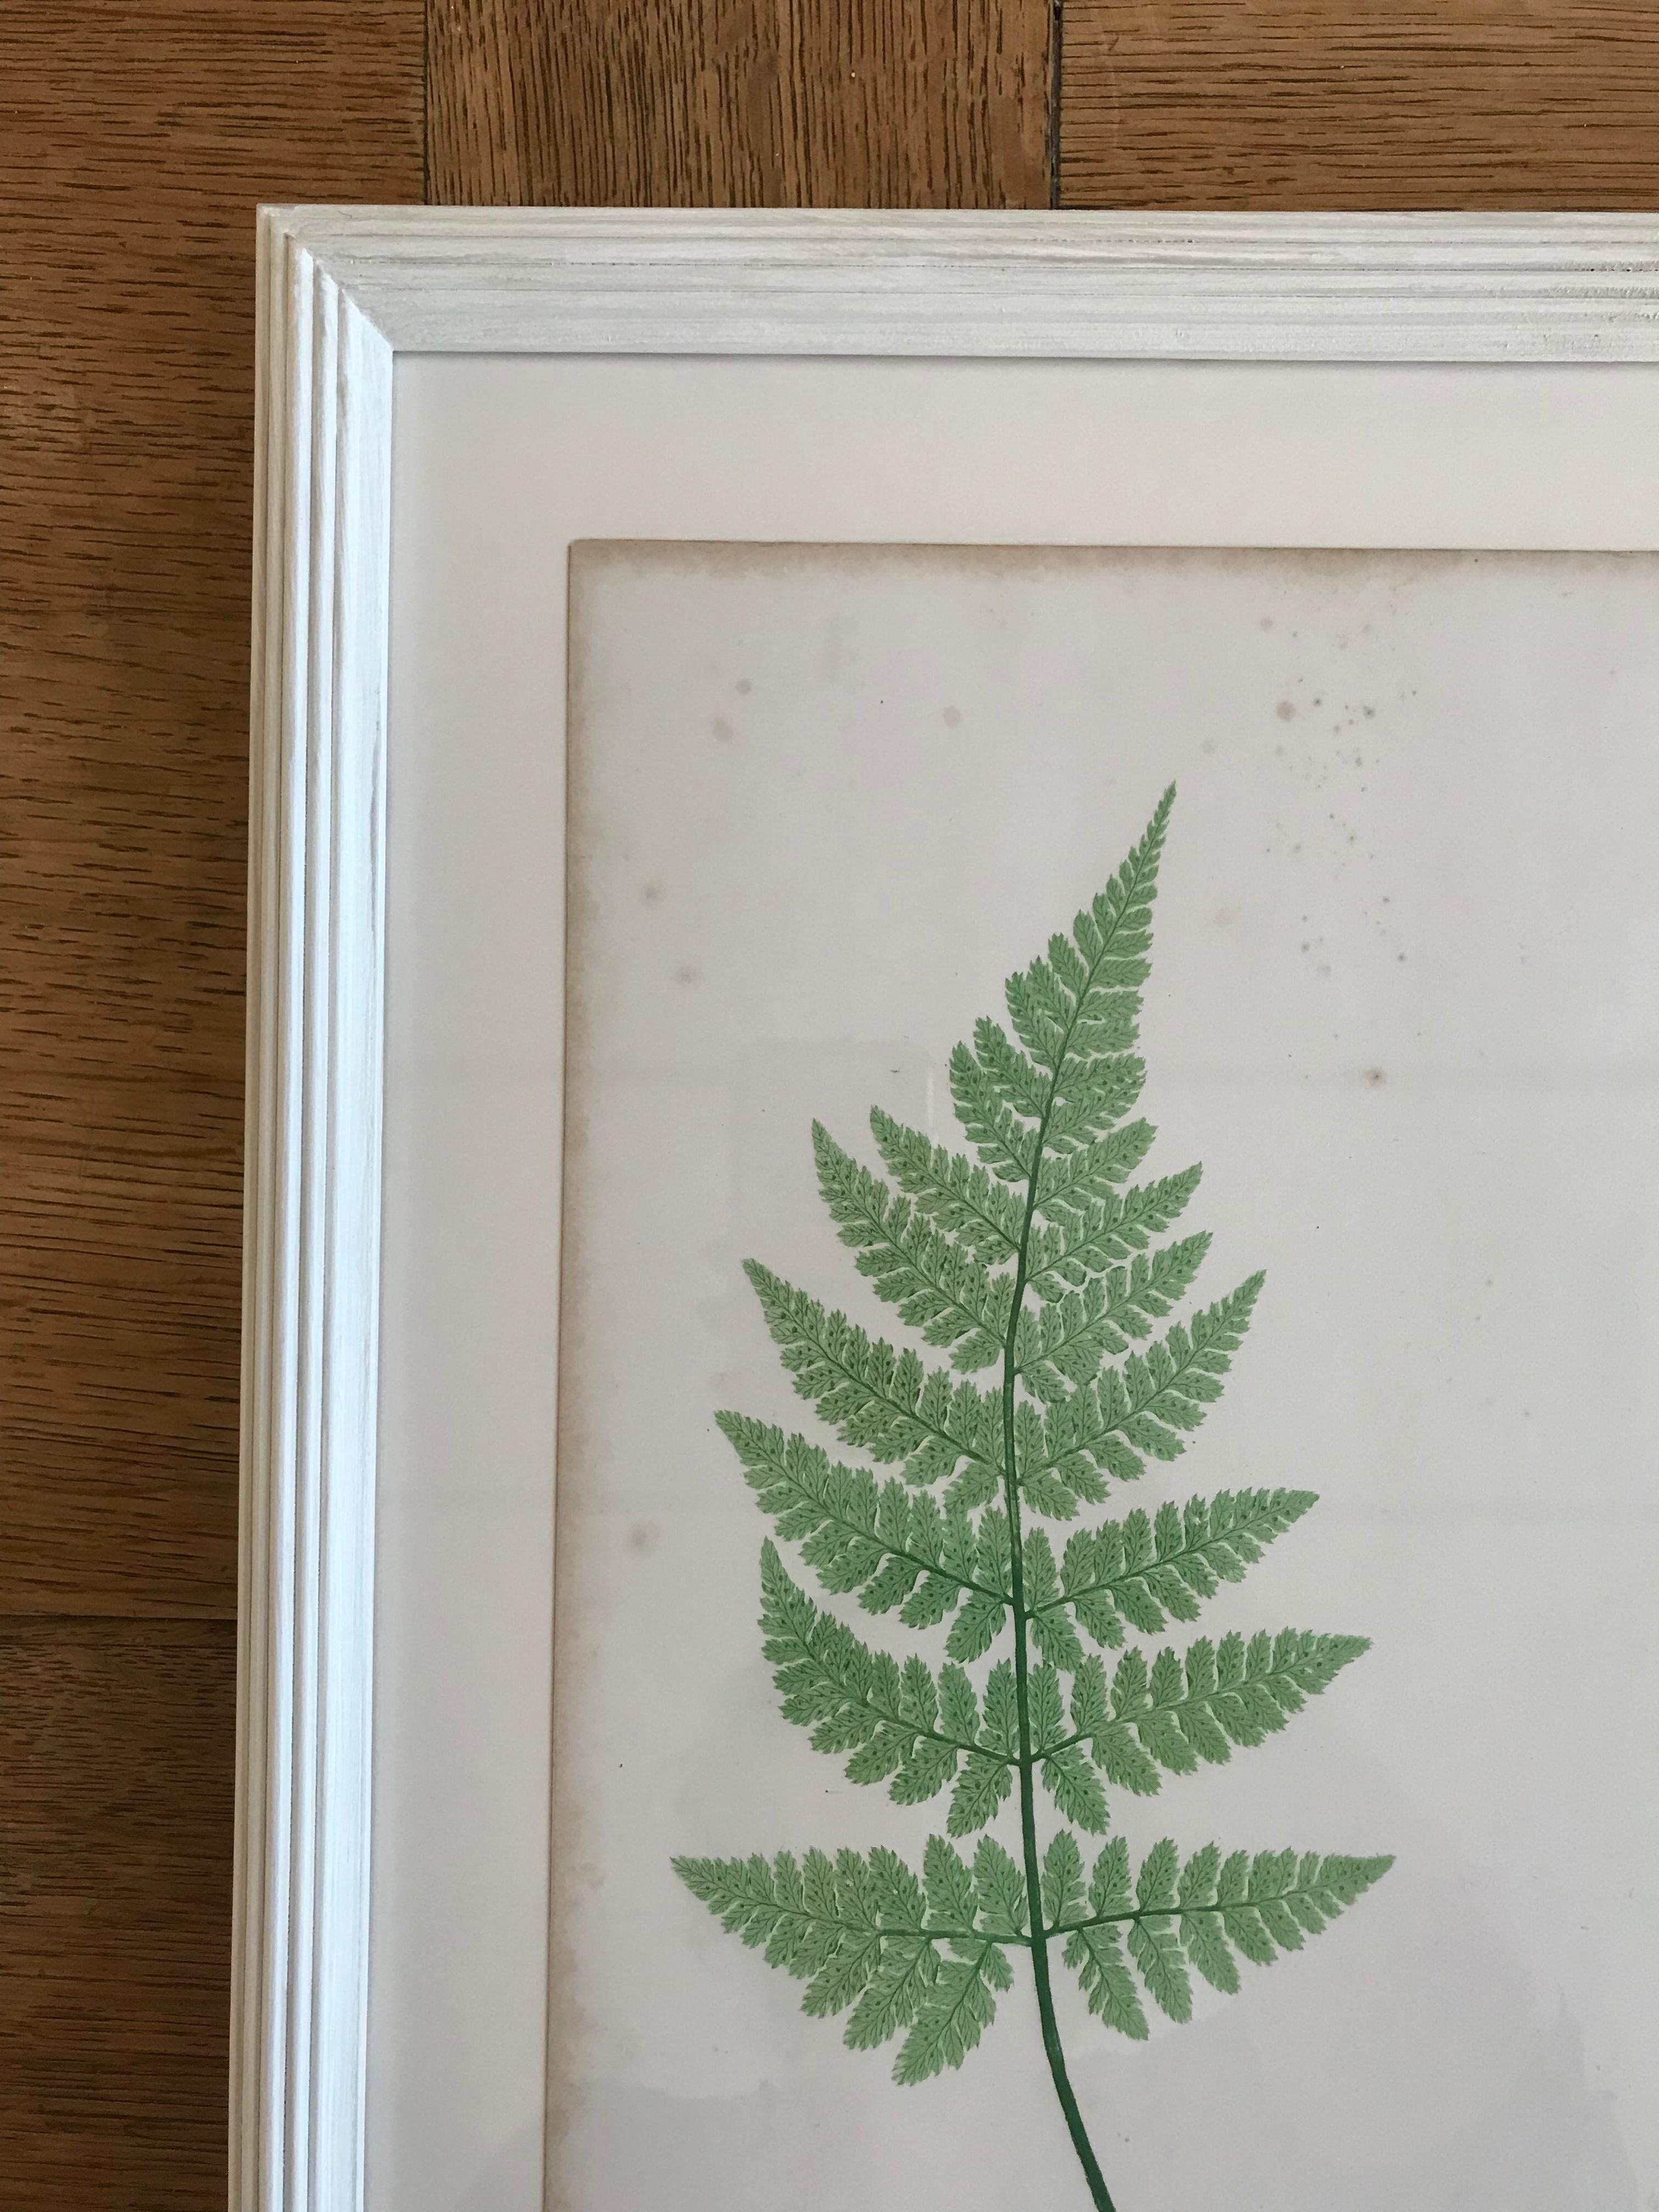 Rare process involving live specimens pressed into printing plates, circa 1855. Custom framing with conservation glass.

Plate XXV.